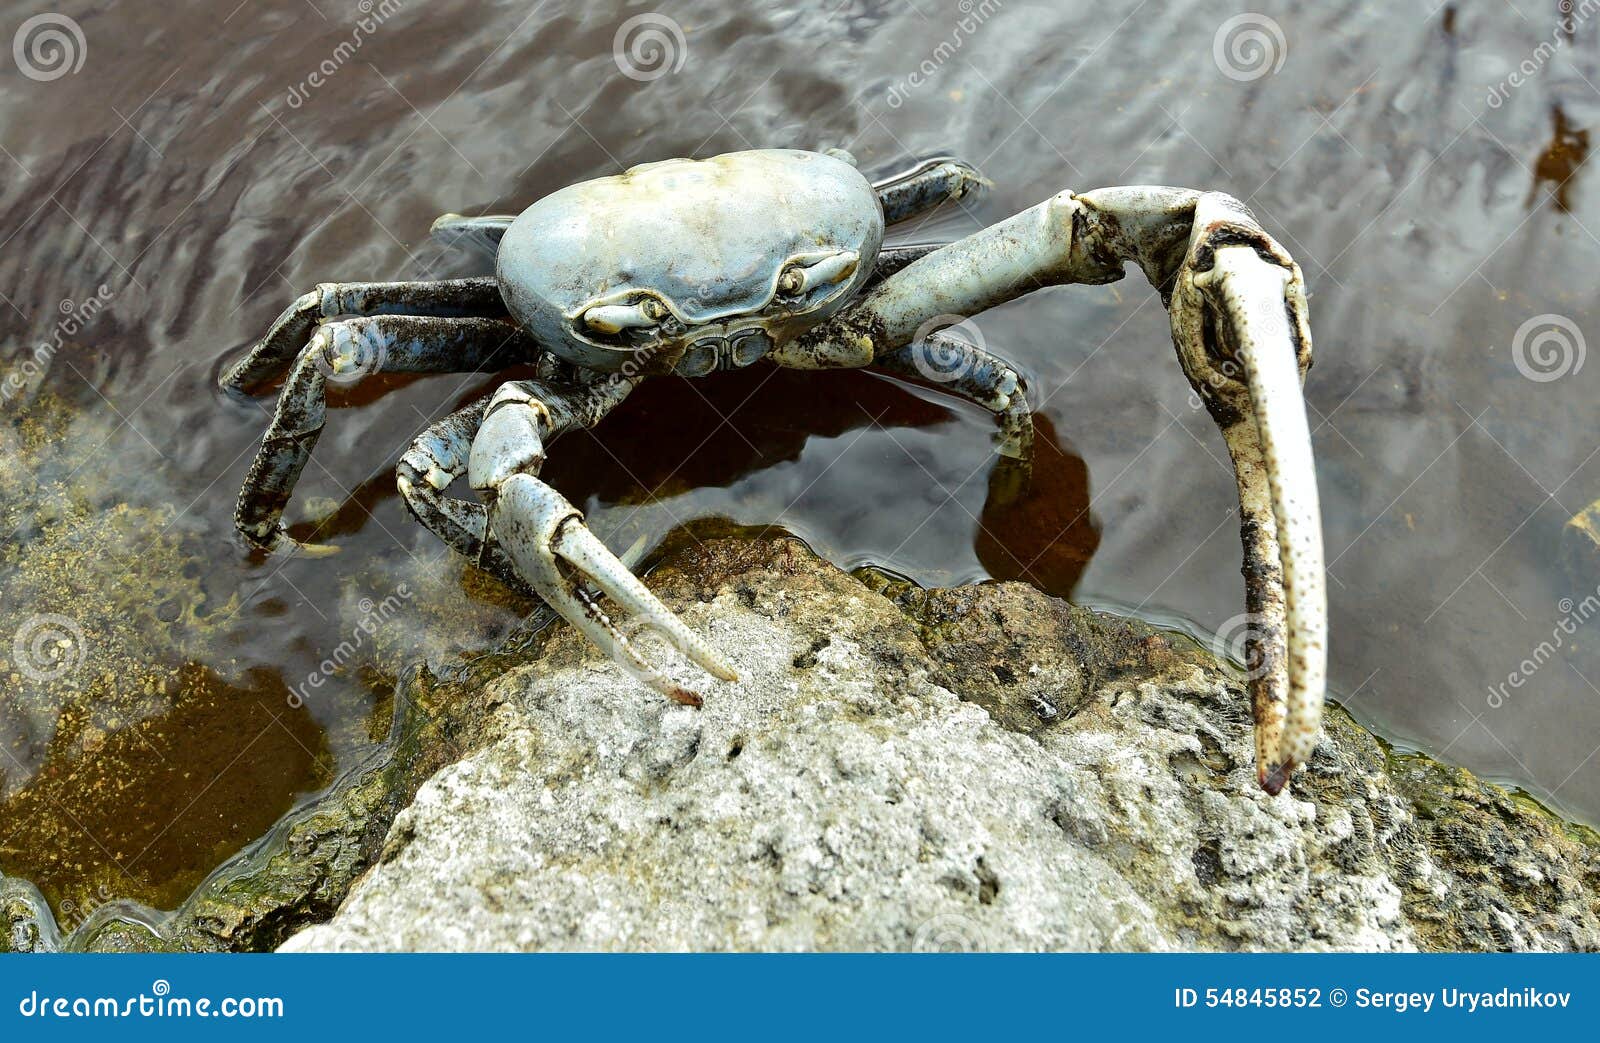 blue land crab (cardisoma guanhumi)